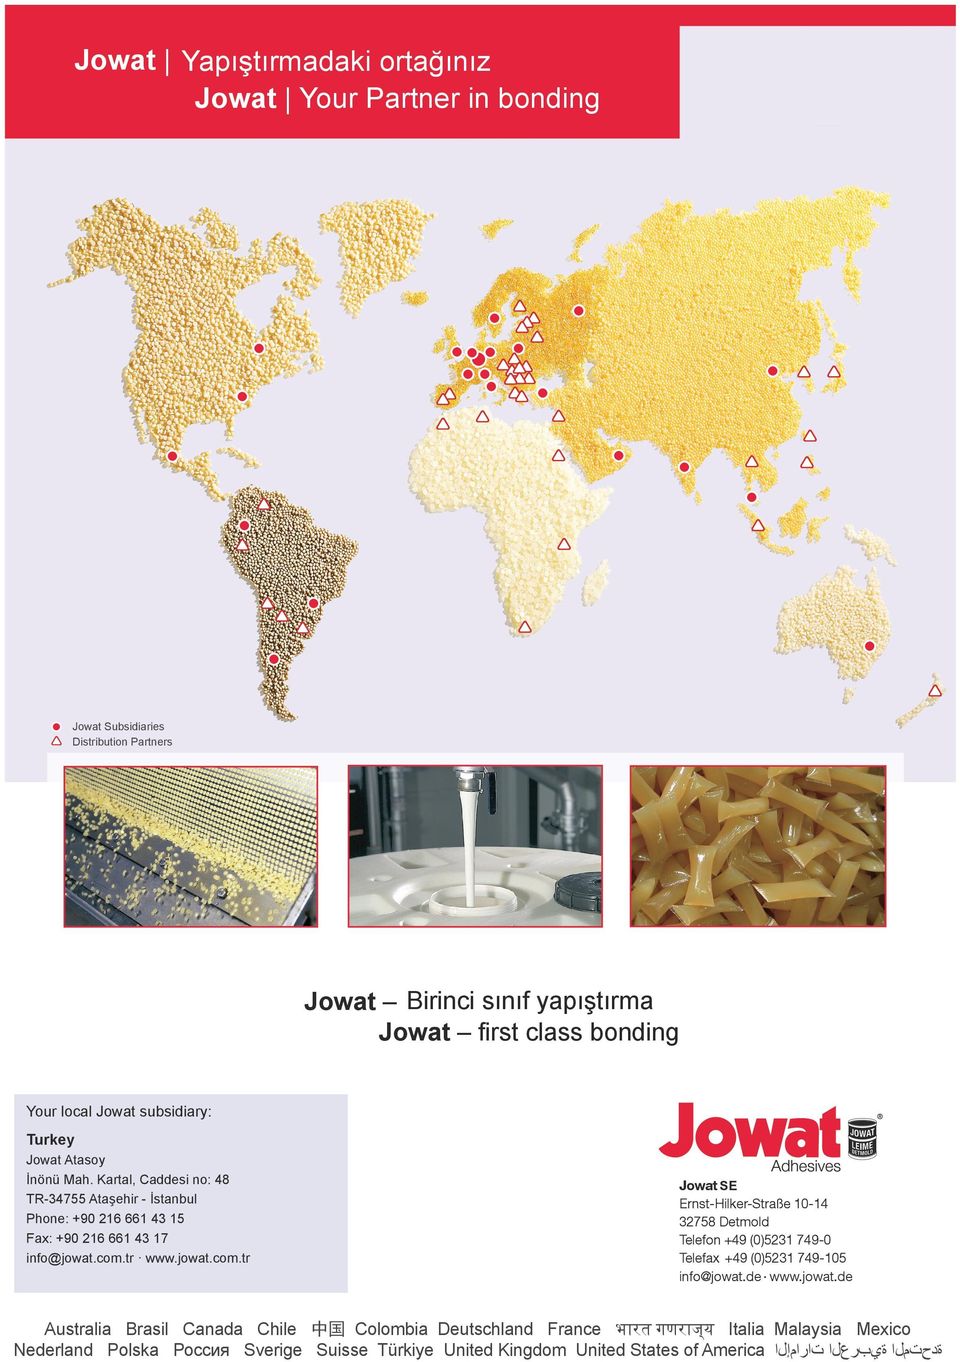 Jowat-Toptherm - Polyolefin basierende Schmelzklebstoffe für Kante und Ummantelung für hohe Prozesssicherheit mit besten Verarbeitungseigenschaften preisstabil und lieferbar mit ausgezeichneter Adhä-